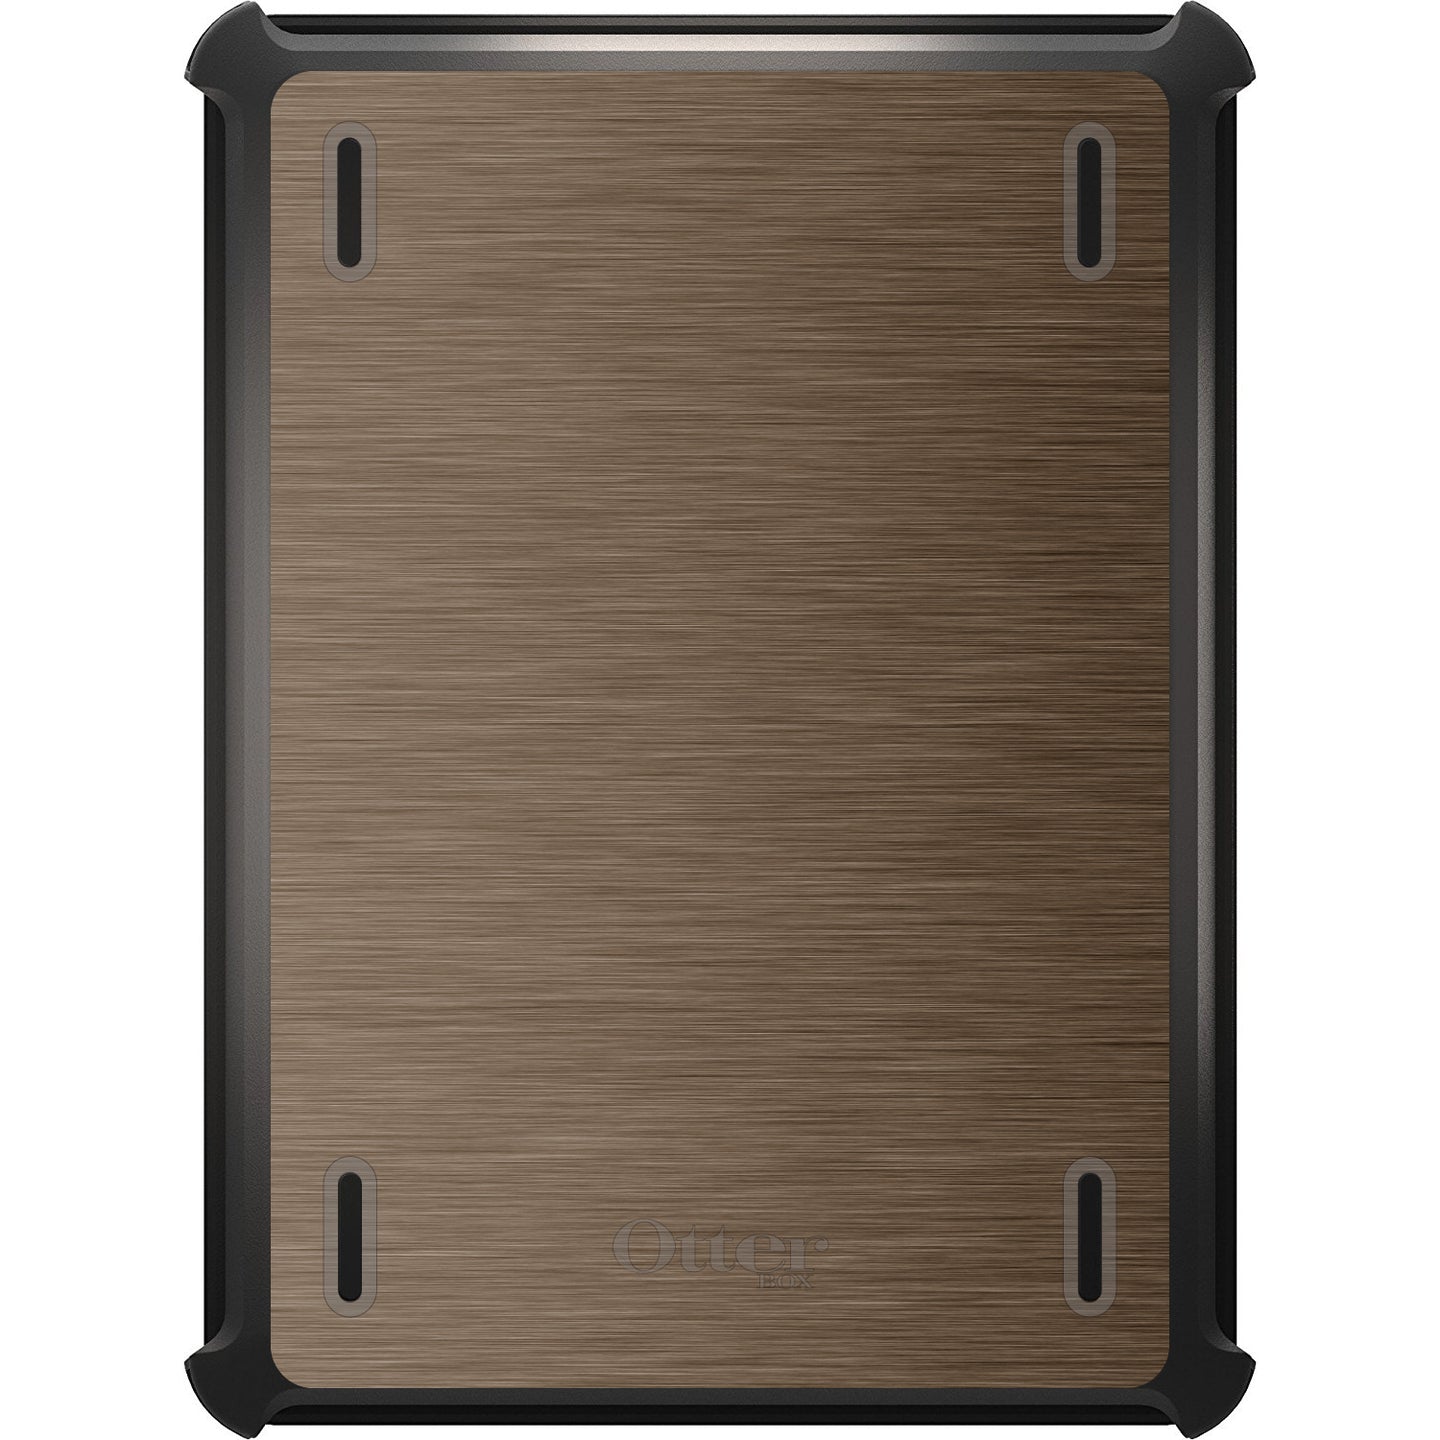 DistinctInk™ OtterBox Defender Series Case for Apple iPad / iPad Pro / iPad Air / iPad Mini - Brown Stainless Steel Print